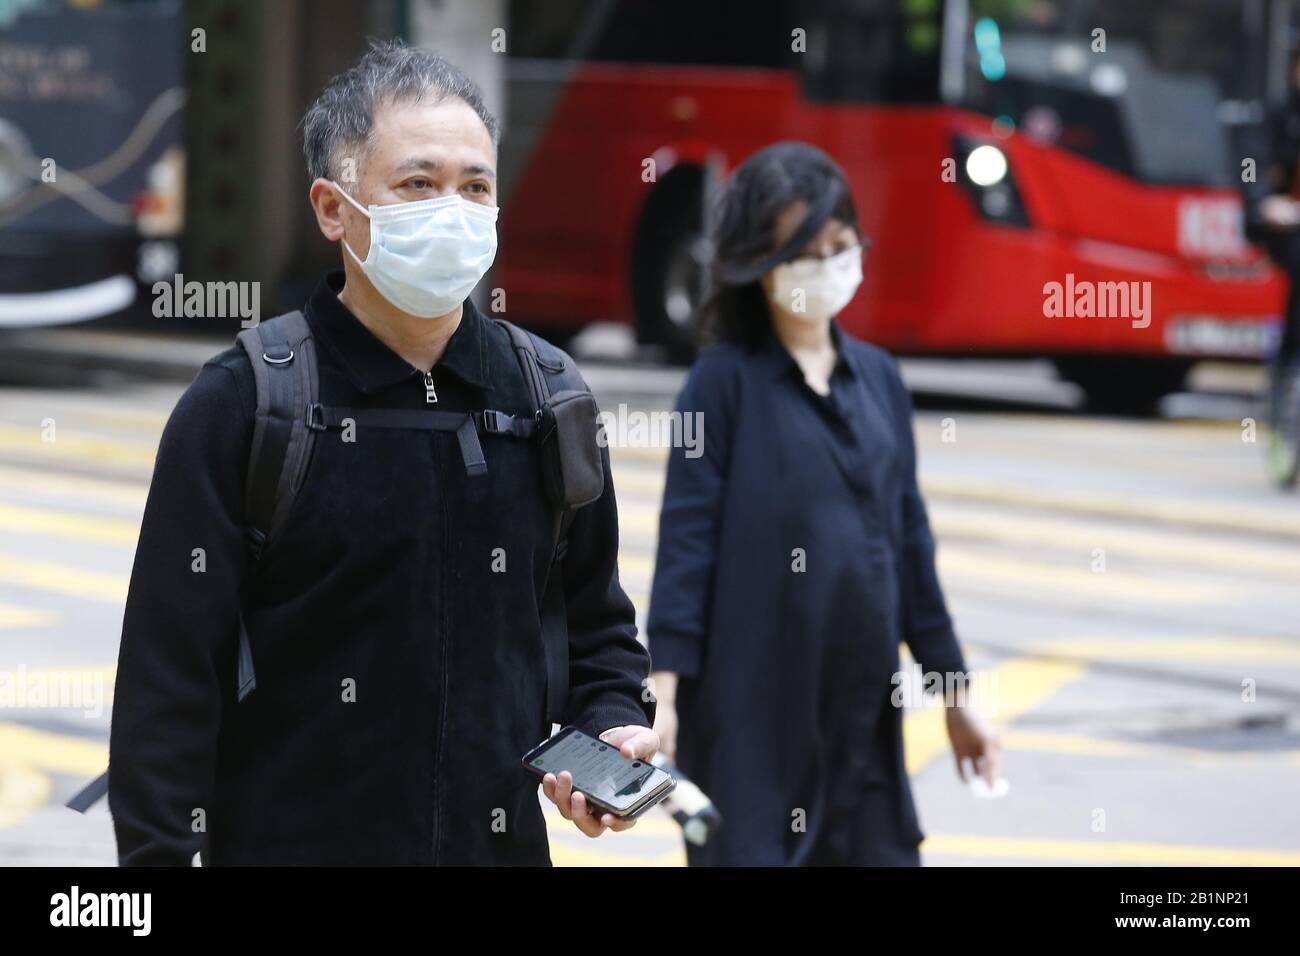 Hong Kong, HONG KONG. 27th Feb, 2020. Persone mostrate indossare maschere per proteggersi dal Coronavirus (Covid-19) a Hong Kong. Si ritiene che il virus sia iniziato in un mercato animale vivo a Wuhan, in Cina. Credit: David Mcintyre/Zuma Wire/Alamy Live News Foto Stock